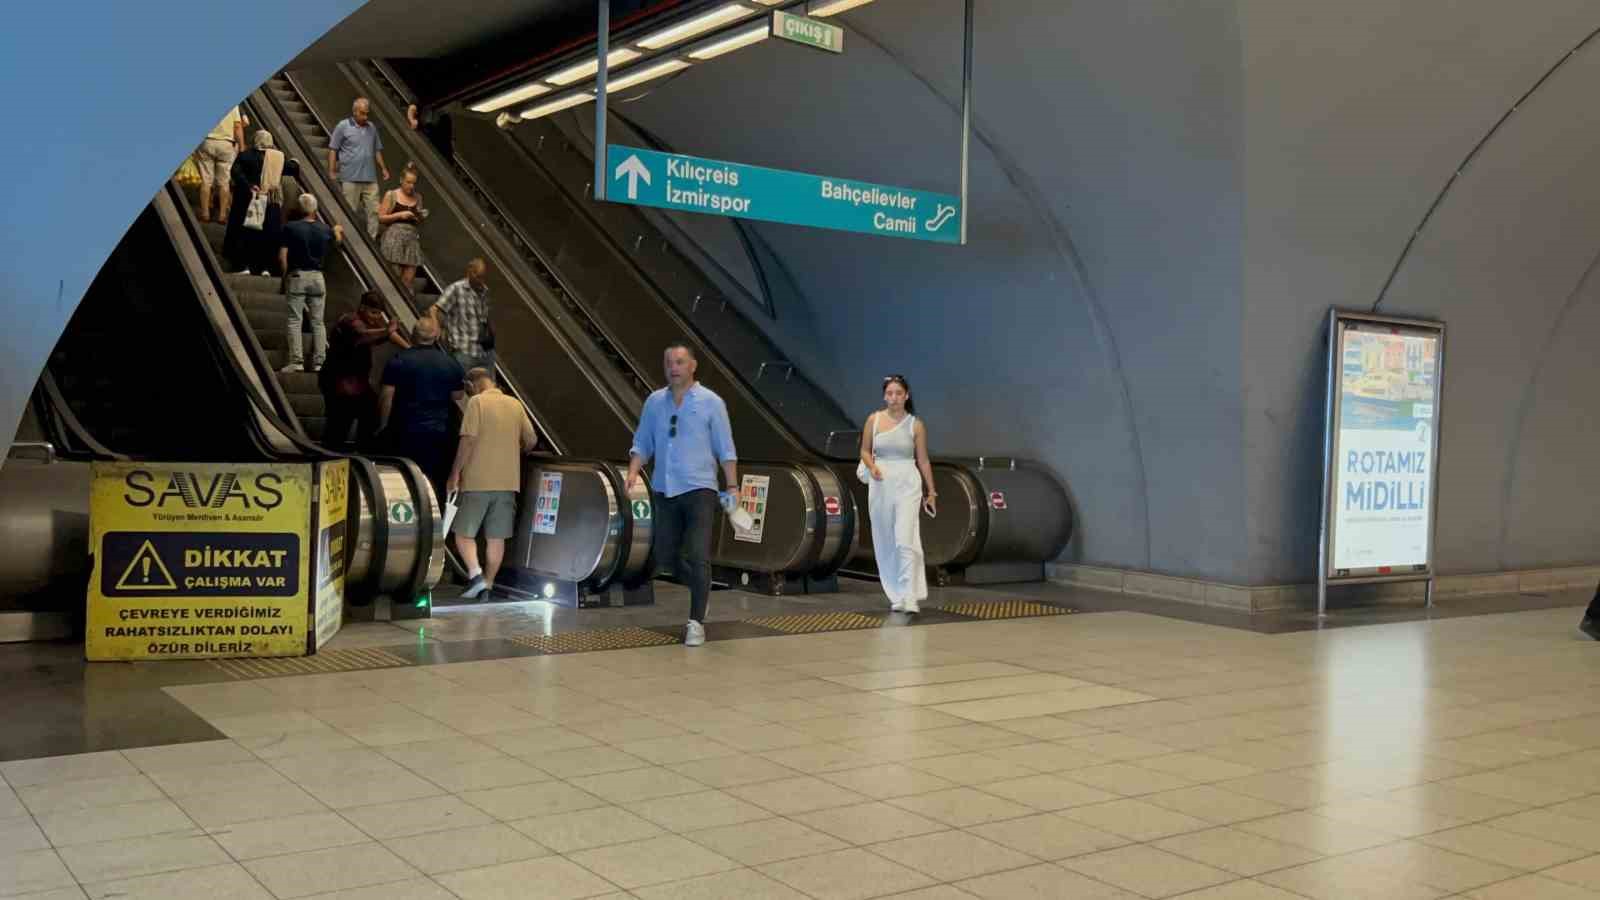 İzmir Metro’sunda yürüyen merdiven arızalandı: Yaralılar var